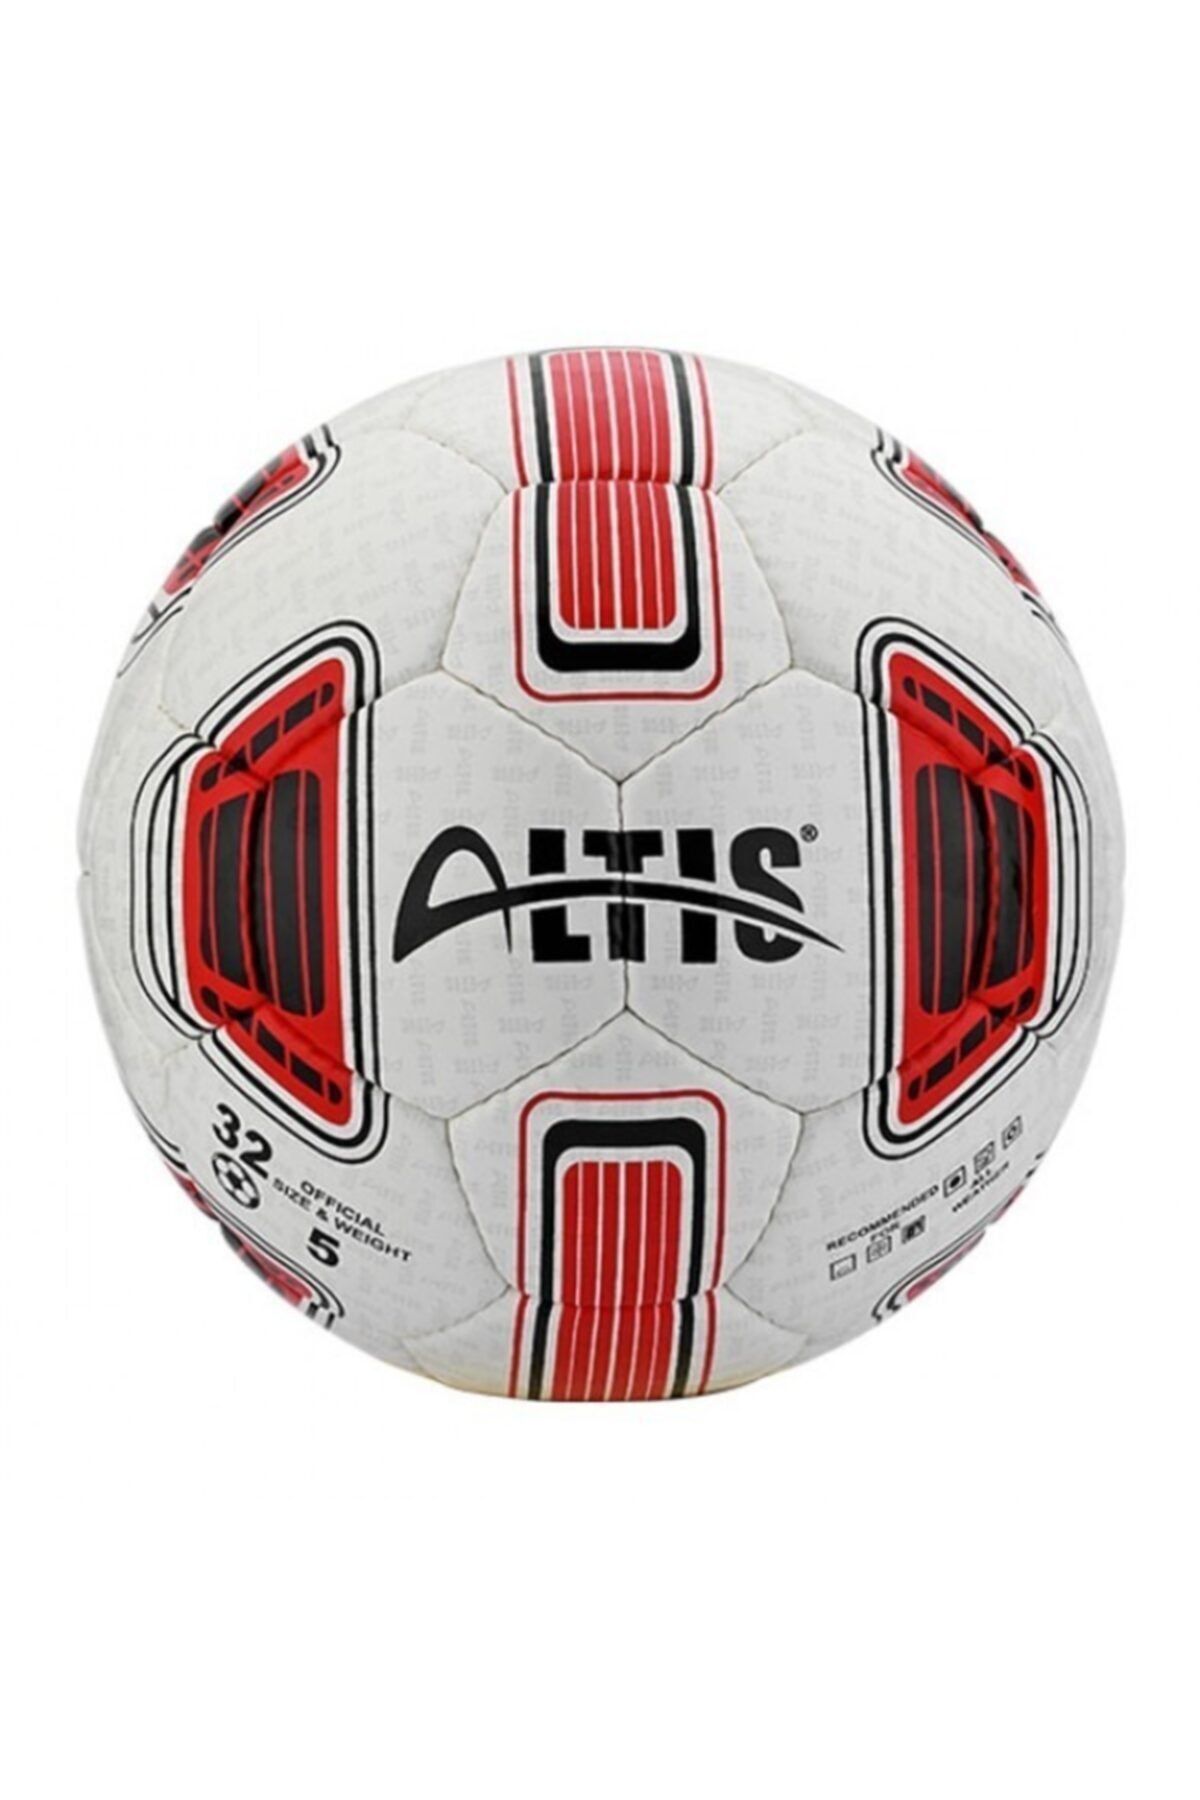 ALTIS Futbol Topu